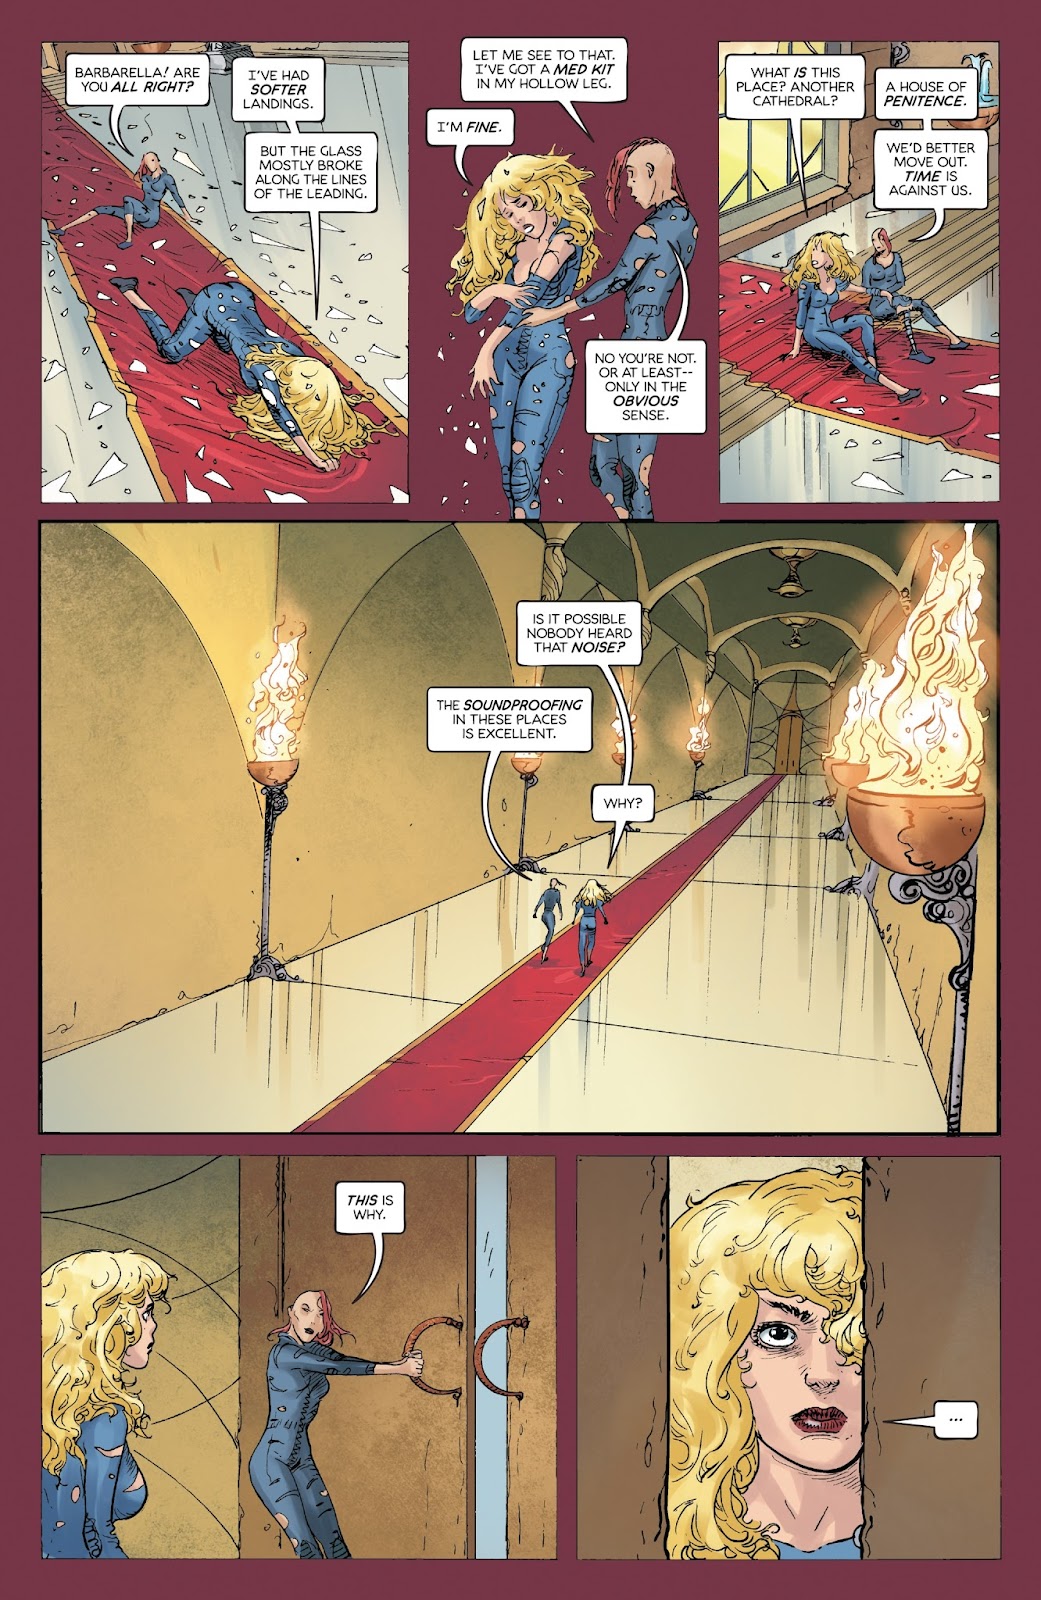 Barbarella (2017) issue 2 - Page 5